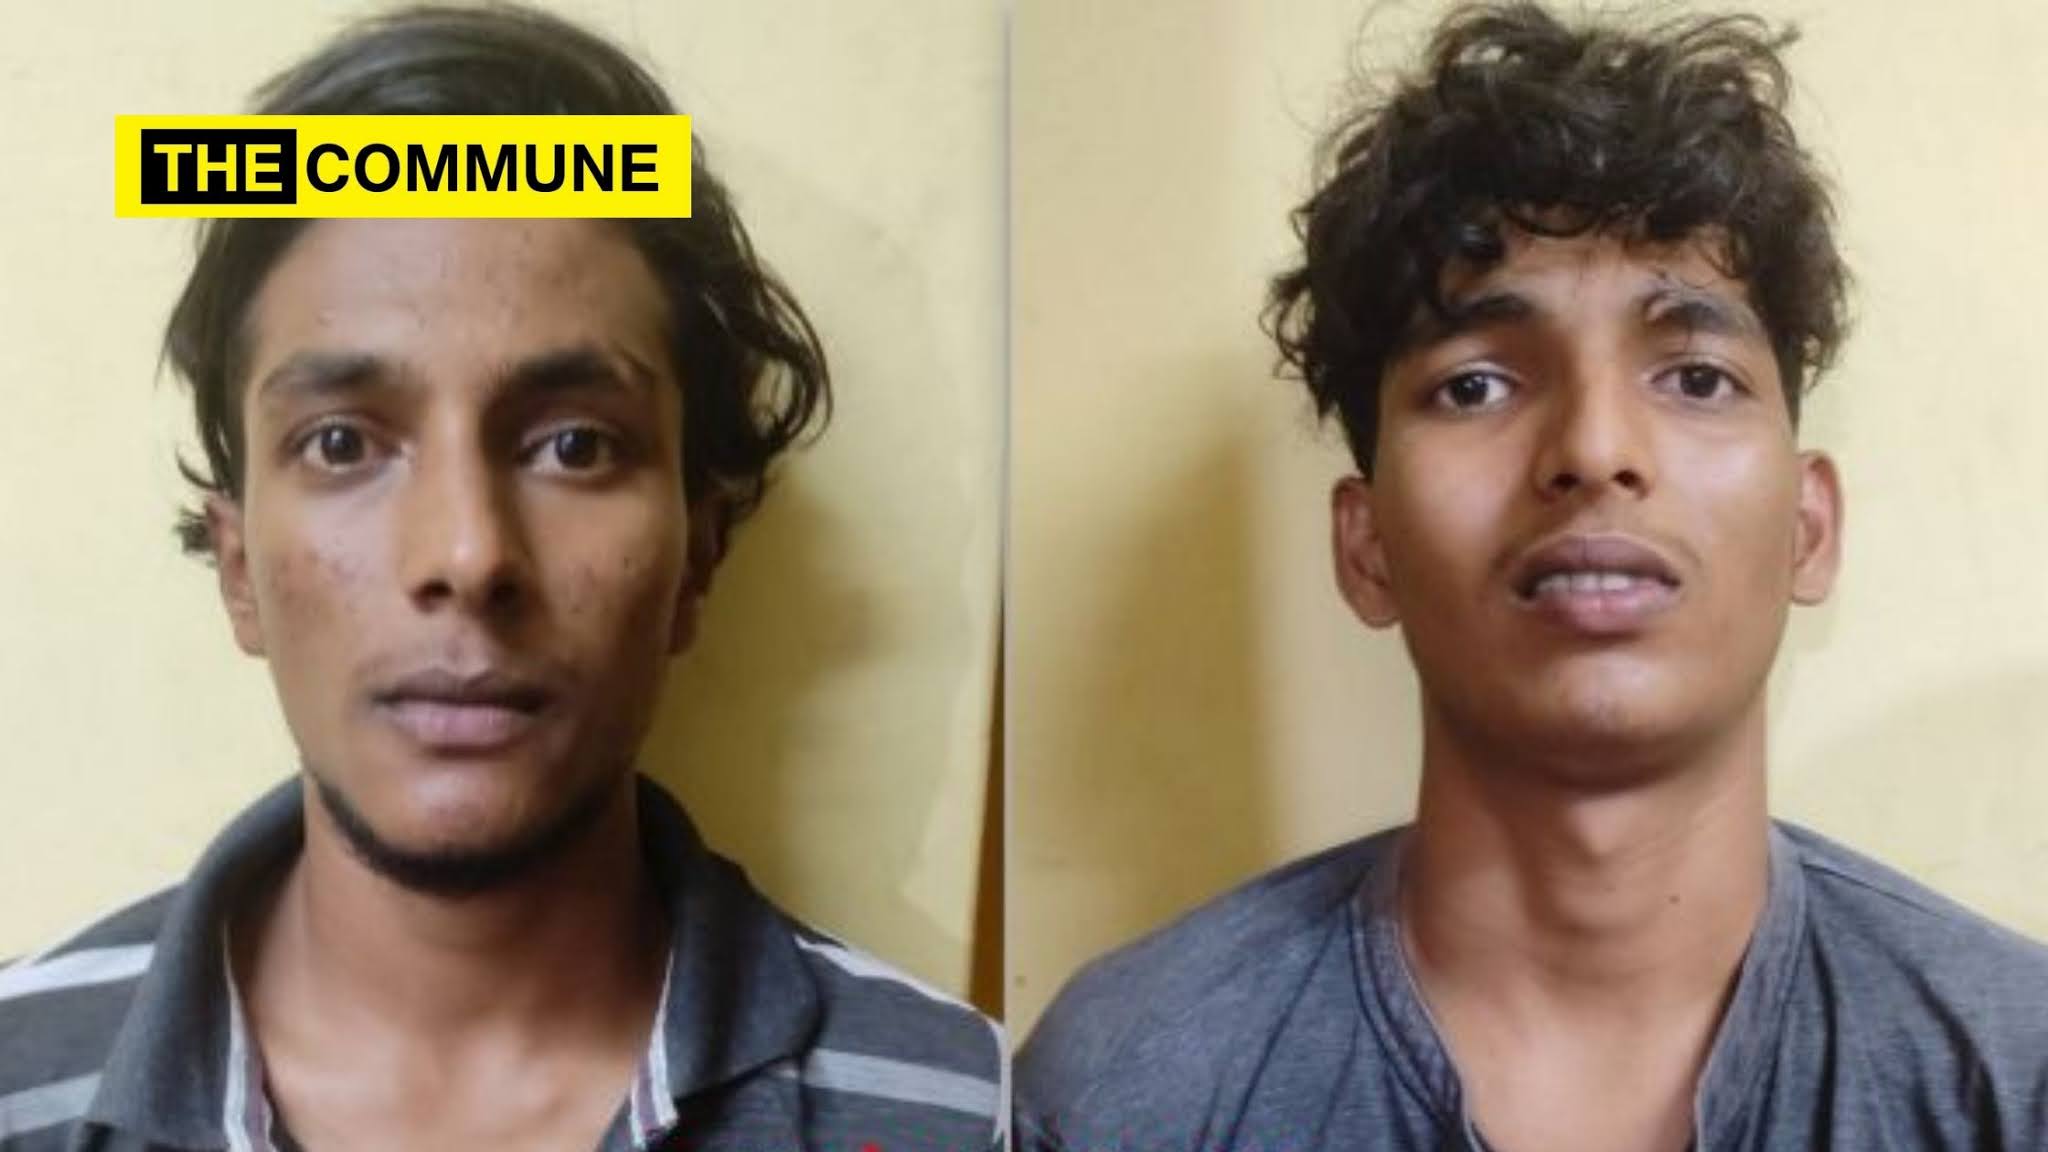 కర్ణాటక: ఆలయ పై పడి సీరియల్ దొంగతనాలకు పాల్పడుతున్న ఇద్దరు ముస్లిం యువకుల అరెస్ట్ - Karnataka: Two Muslim youth arrested for serial temple thefts, saffron flag desecration